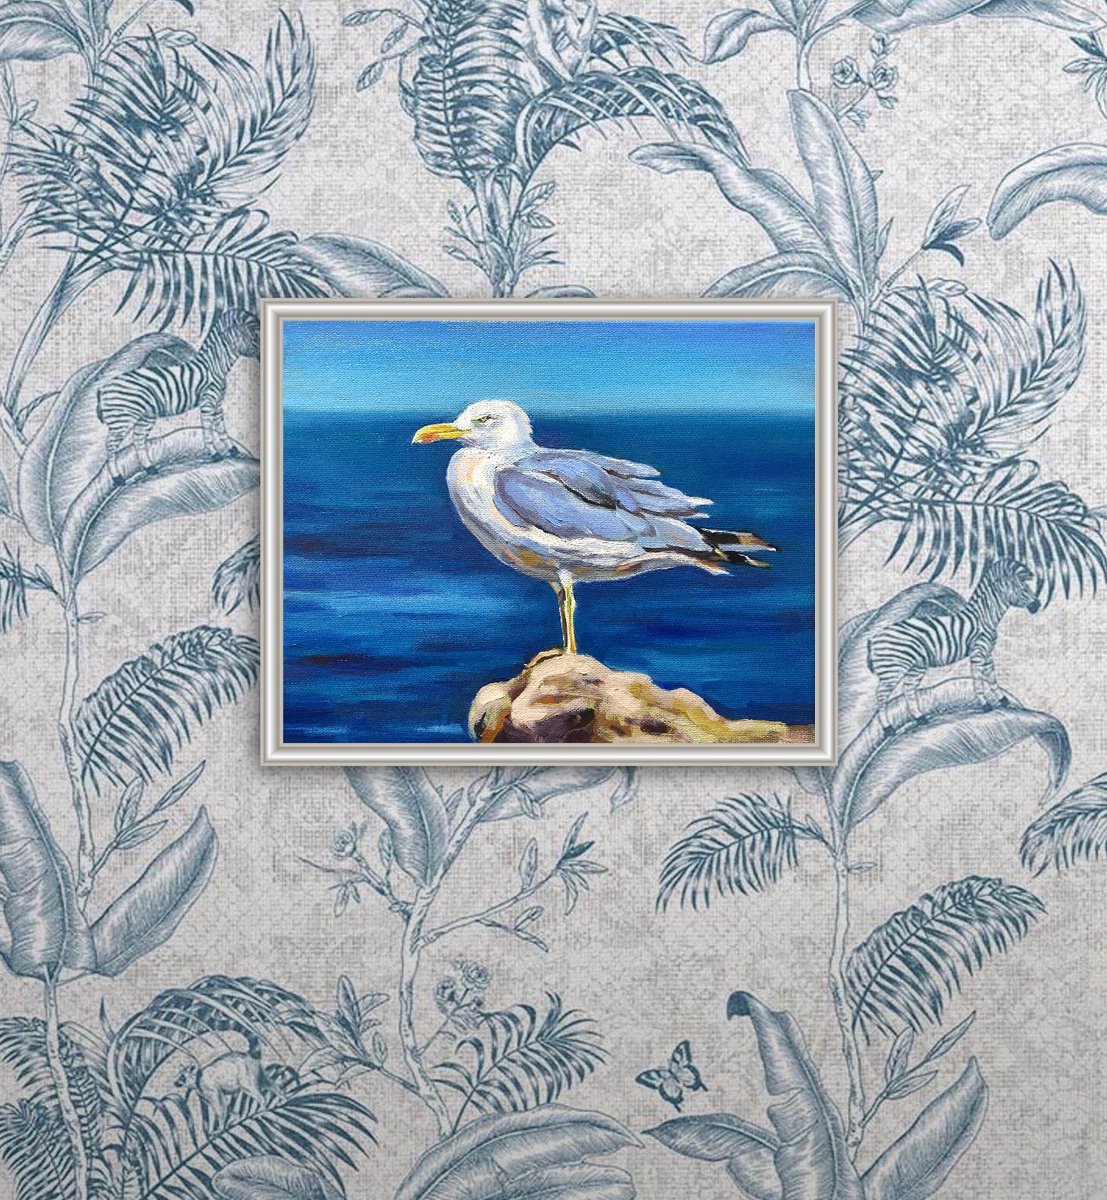 Seagull in the wind by Guzel Min